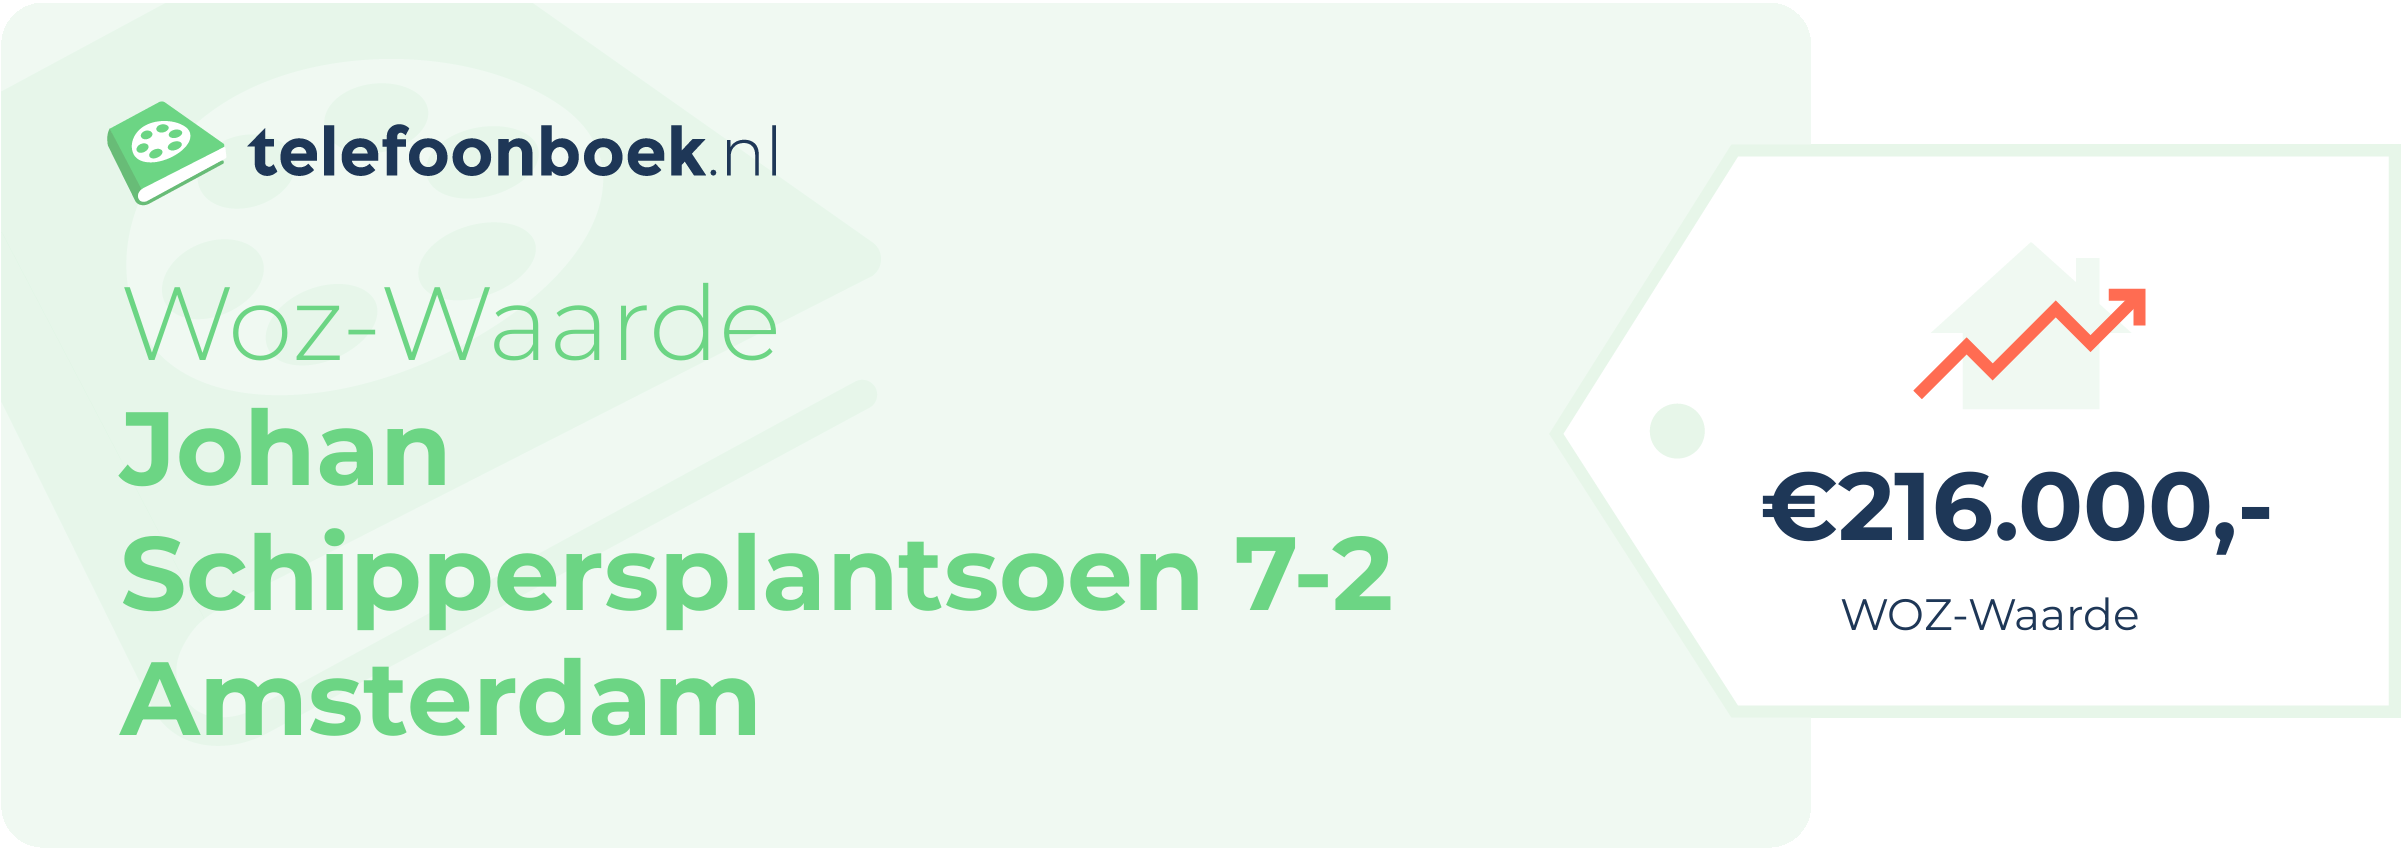 WOZ-waarde Johan Schippersplantsoen 7-2 Amsterdam